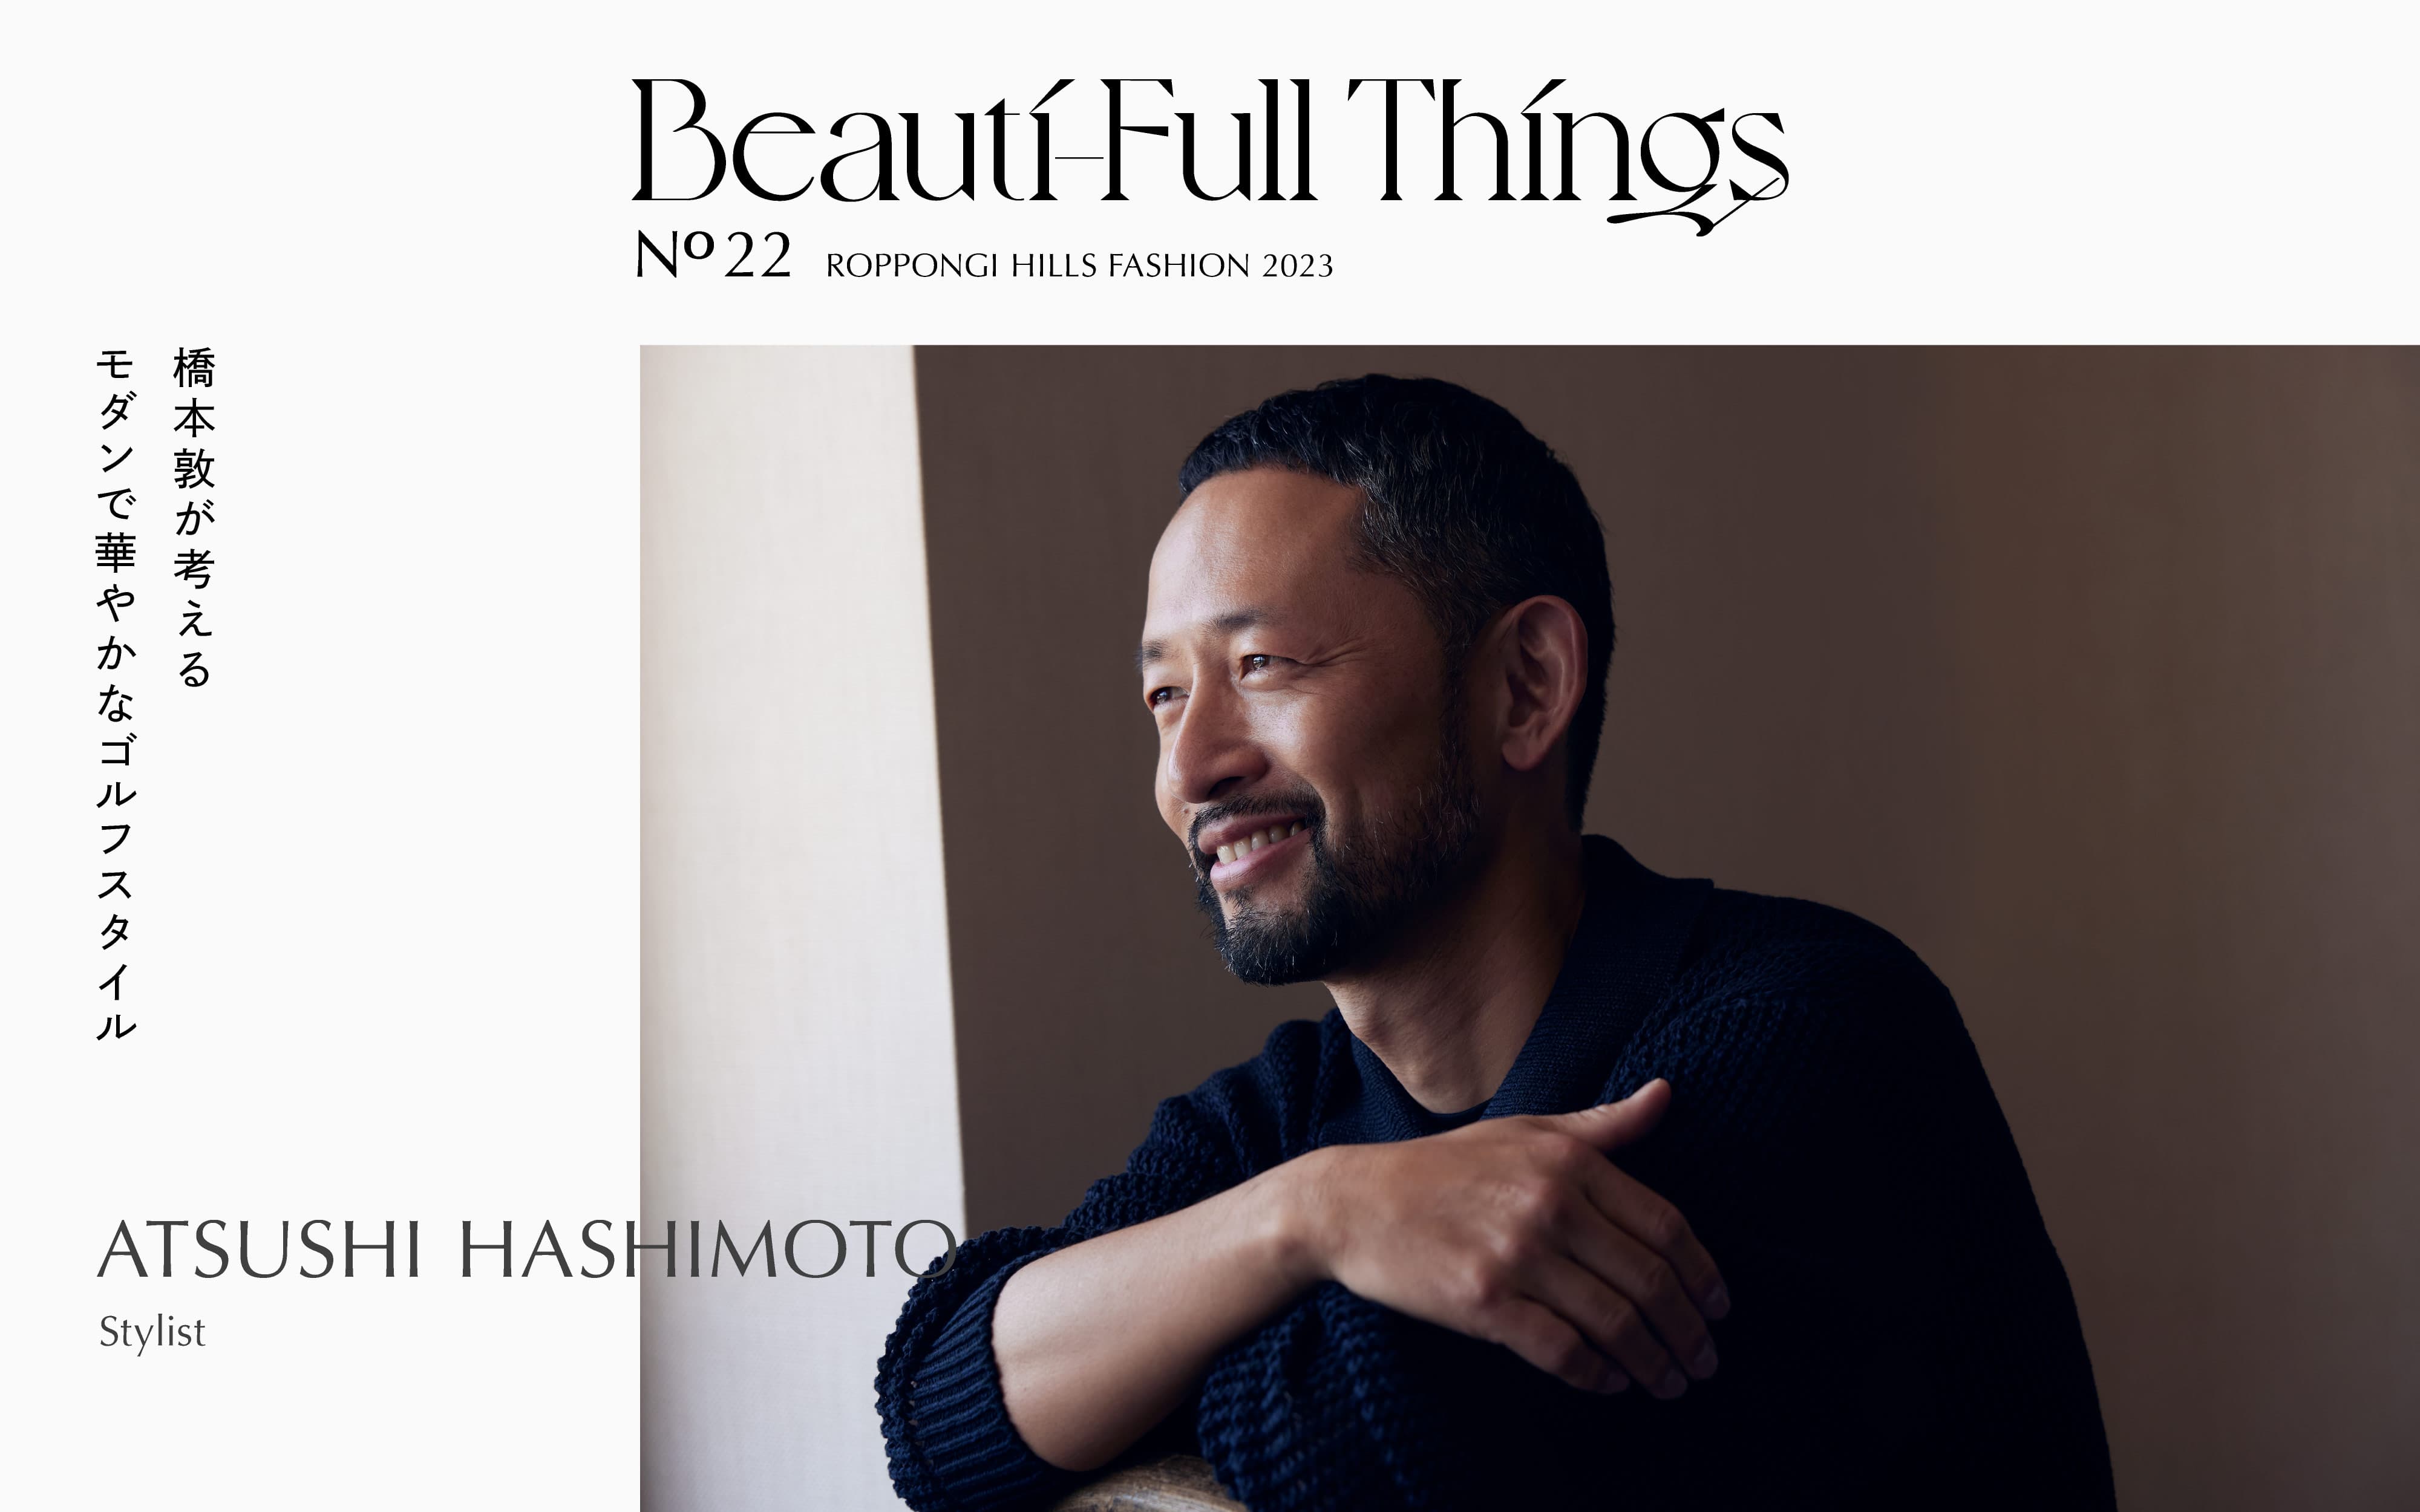 ATSUSHI HASHIMOTO